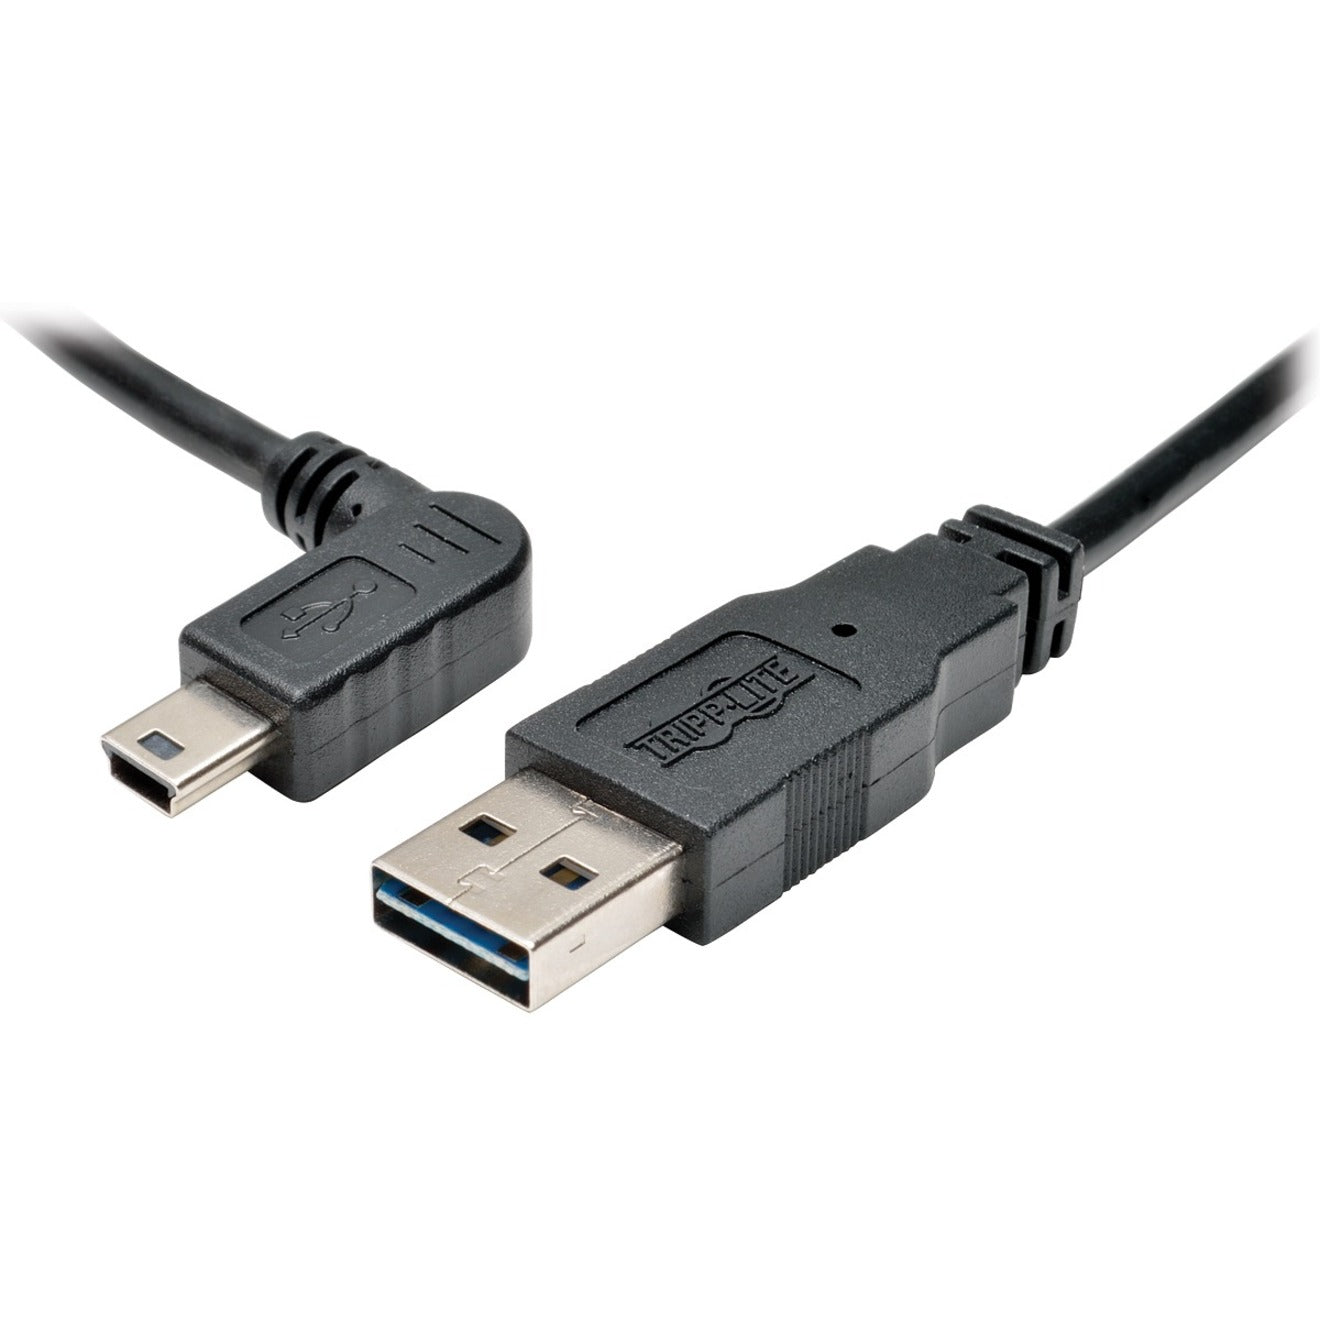 تريب لايت UR030-006-LAB كبل نقل البيانات USB ، 6 قدم ، زاوية يسارية Mini USB 2.0 النوع B - ذكر ، قابل للعكس تريب لايت